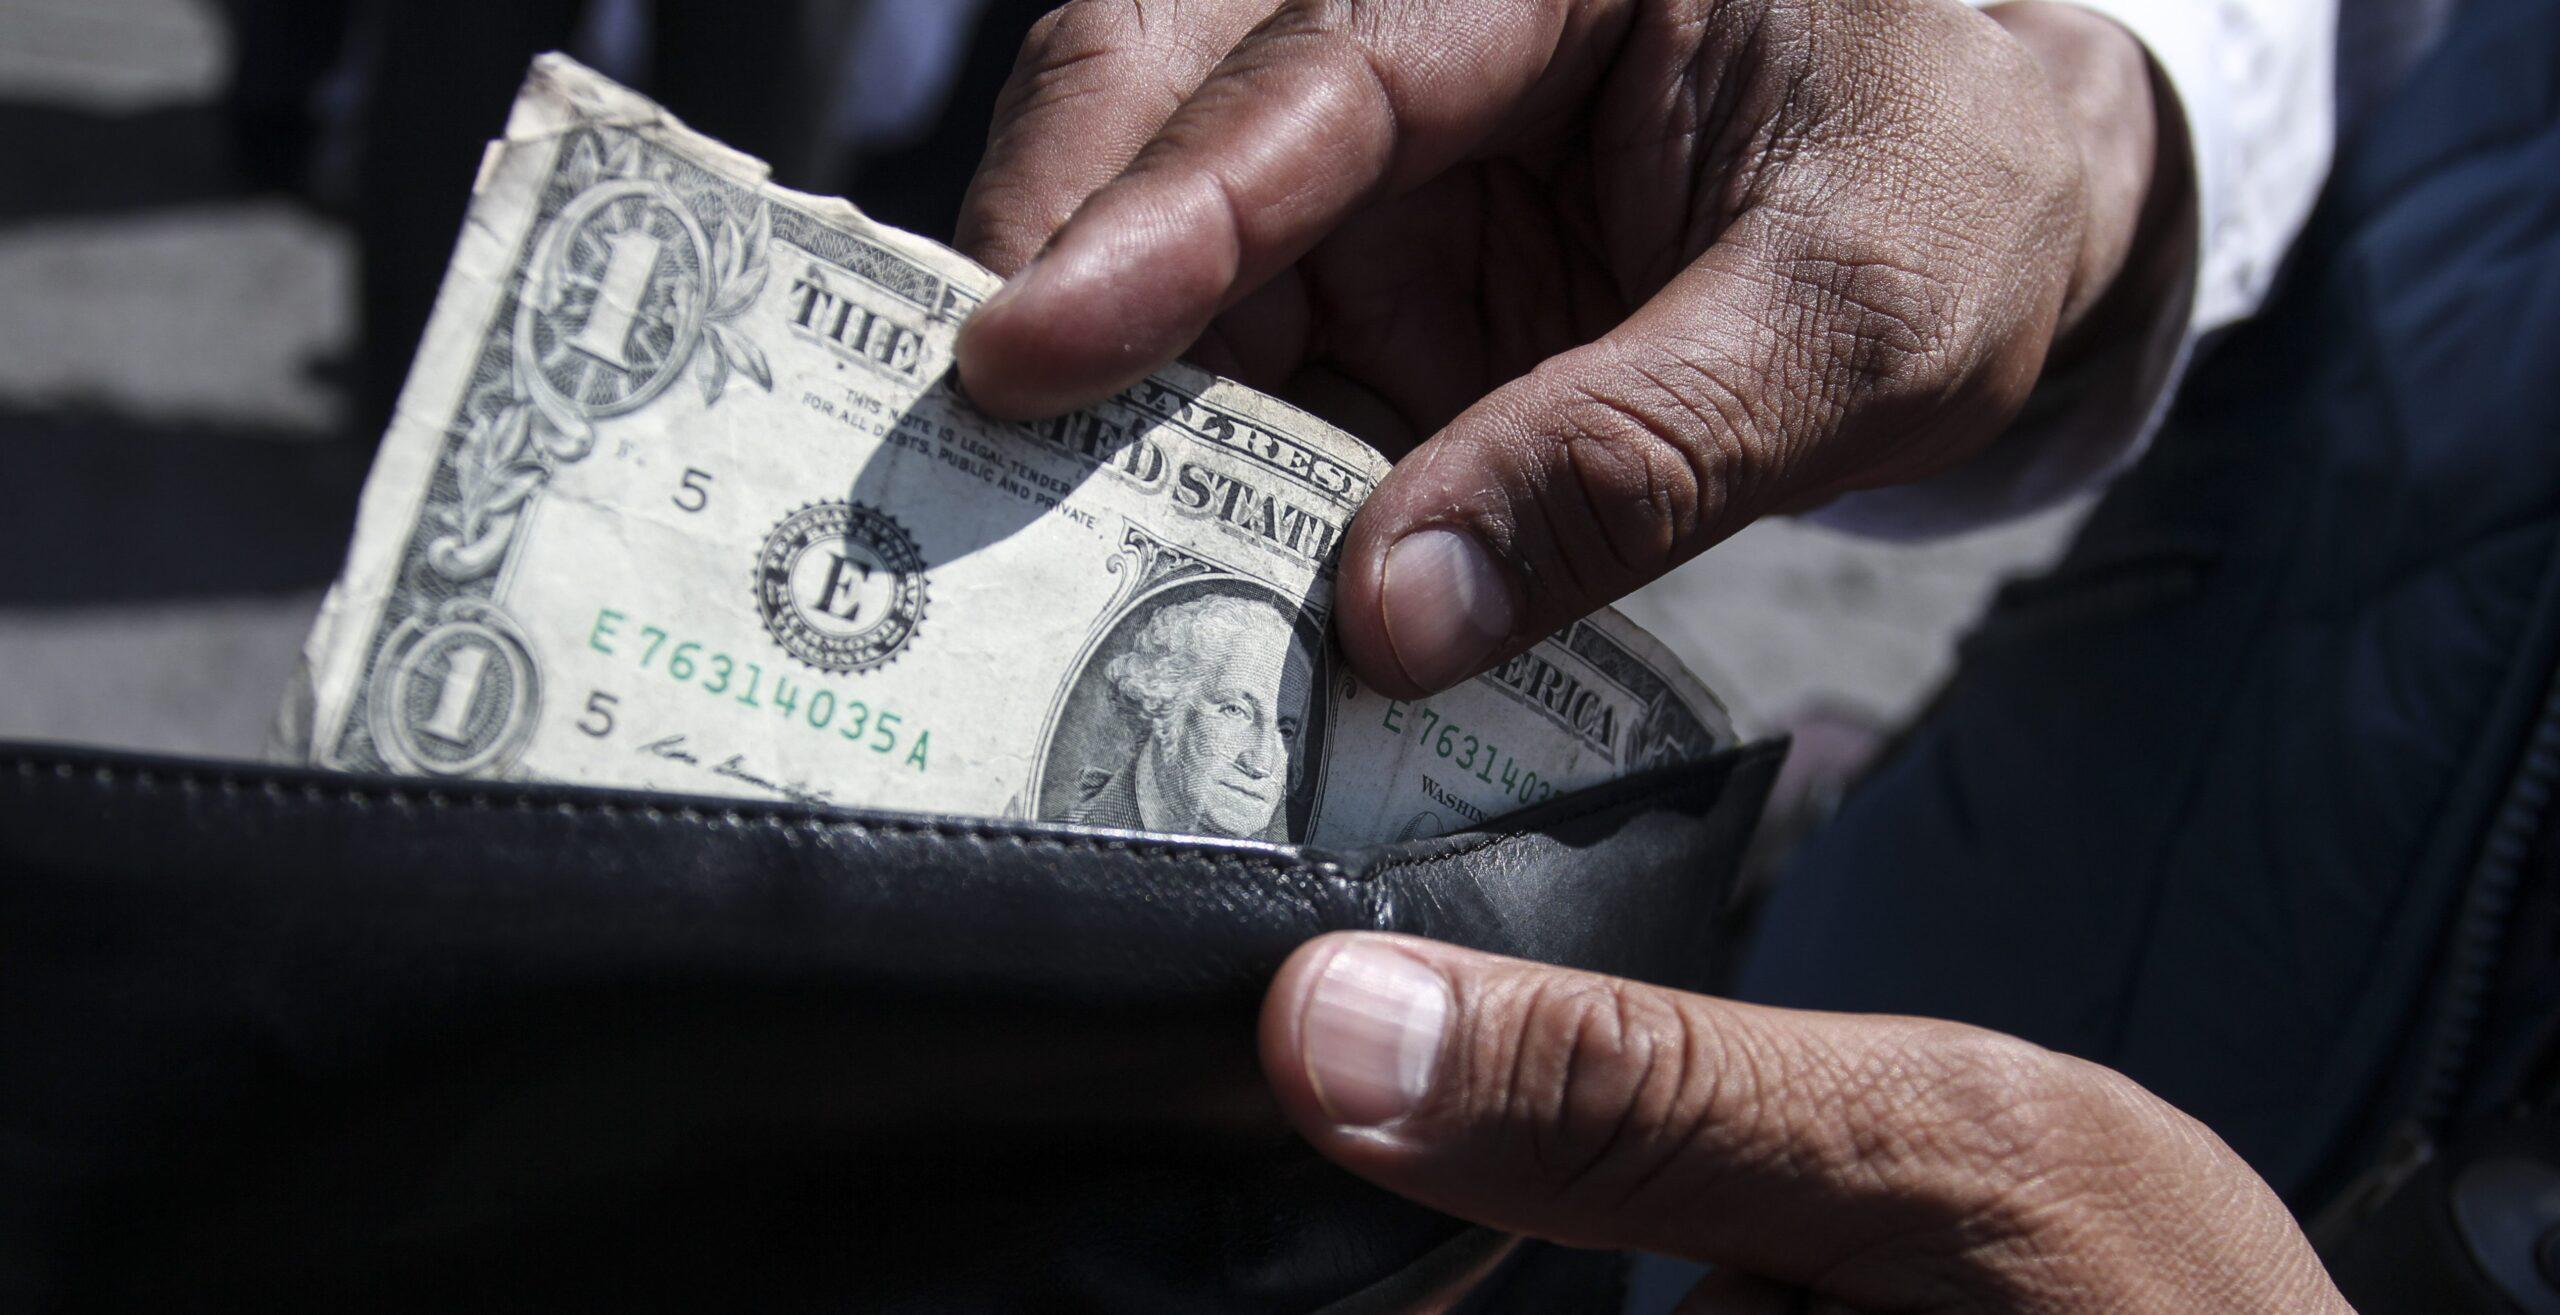 El dólar a 20 pesos sólo tiene efecto psicológico en los mexicanos: Hacienda